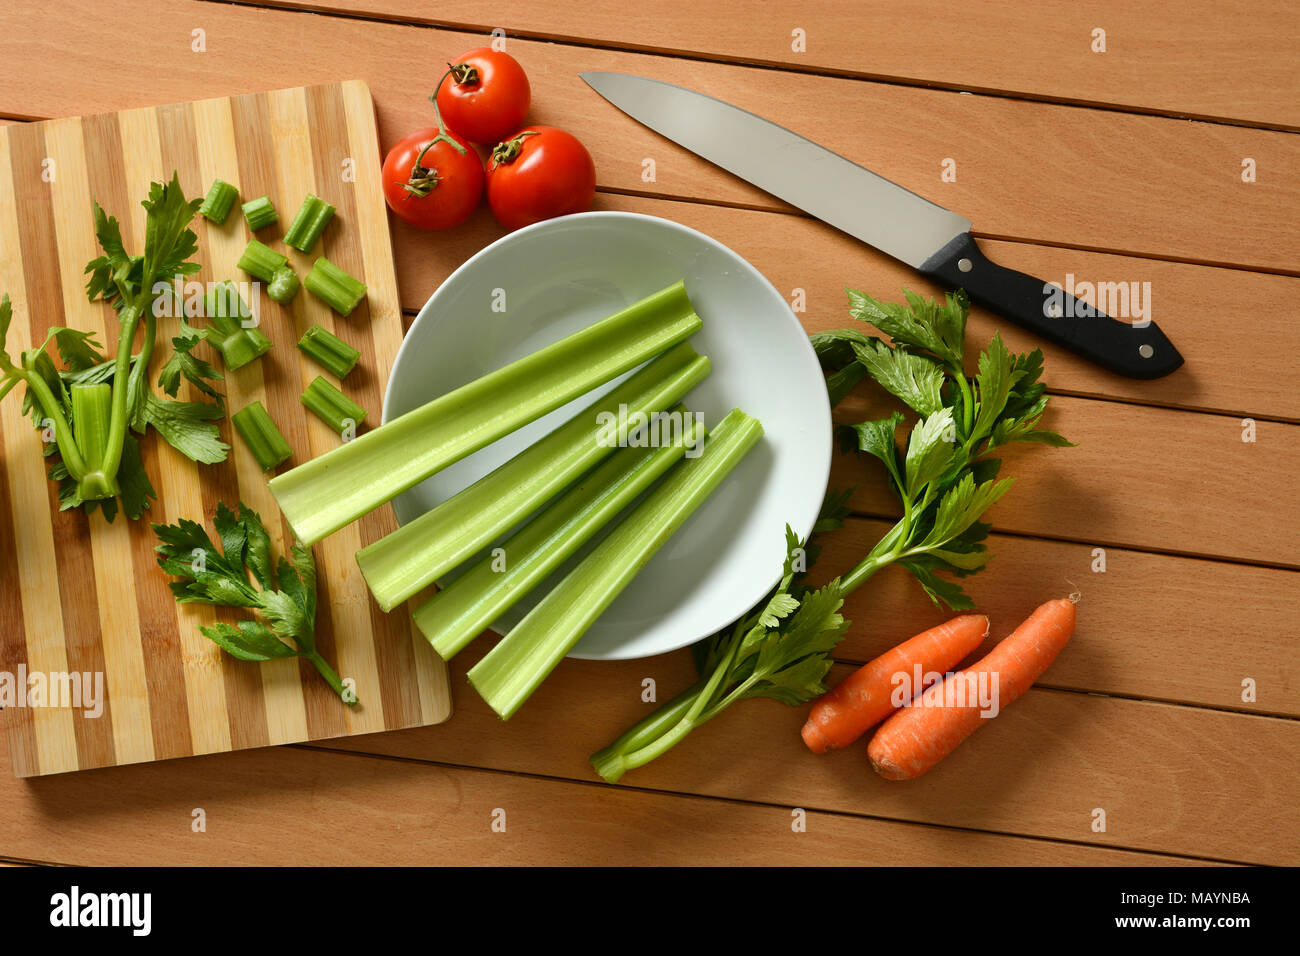 Céleri, carottes et tomates à l'aide d'un couteau à côté - libre Banque D'Images